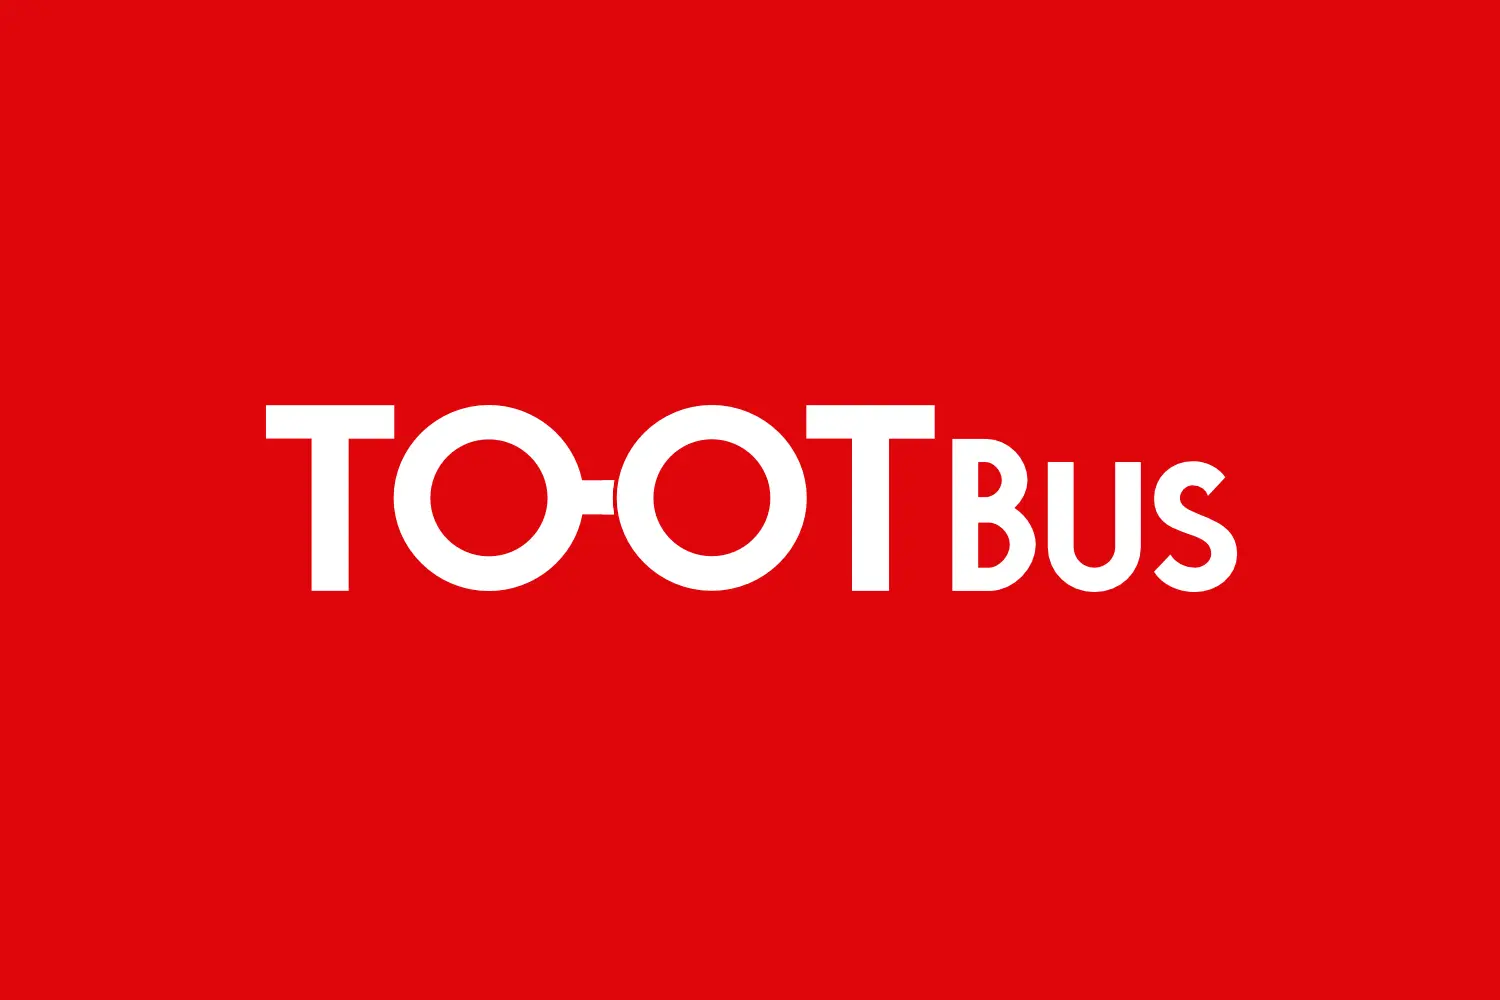 Tootbus logo banner